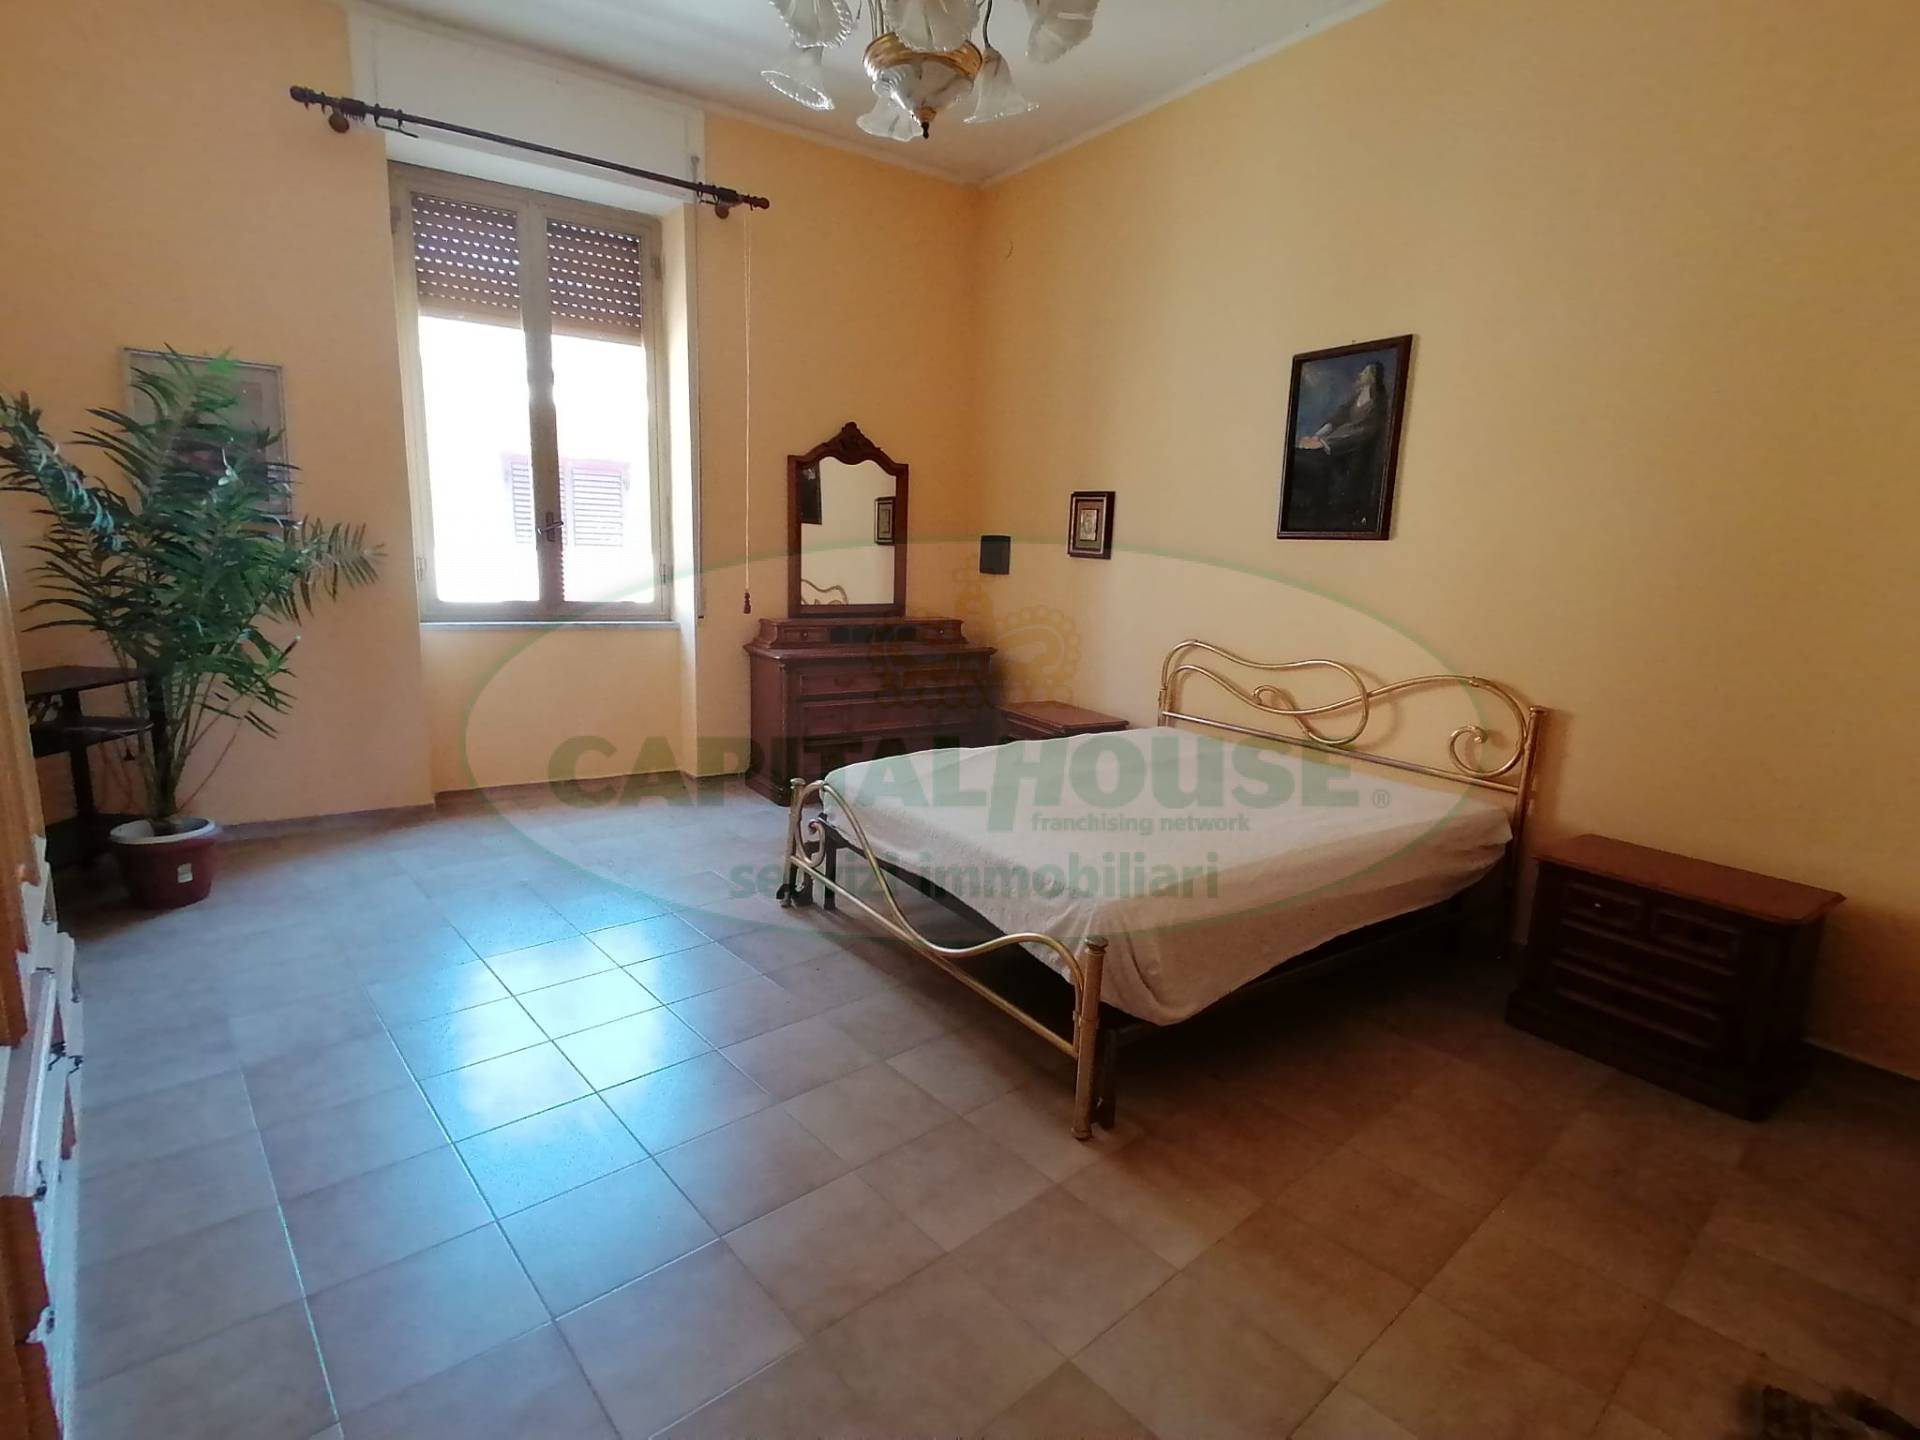 Appartamento in vendita a Cicciano, 2 locali, prezzo € 40.000 | CambioCasa.it